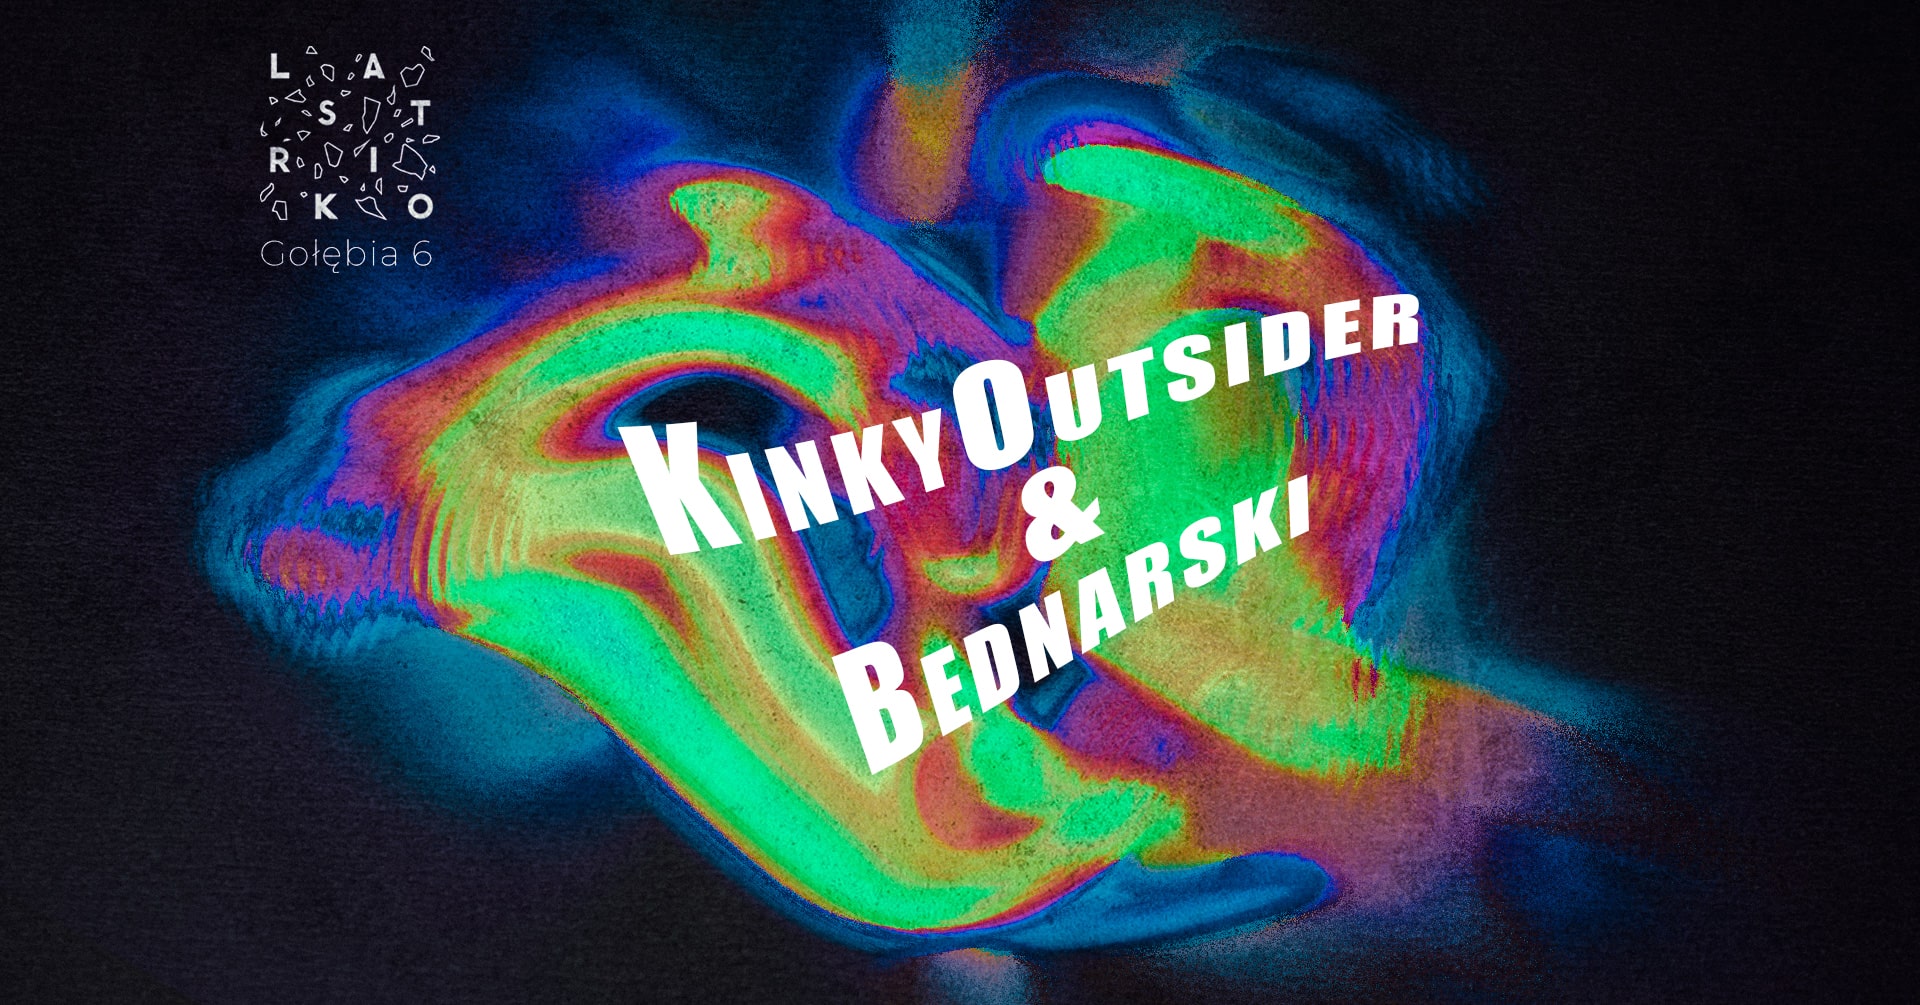 KinkyOutsider & Bednarski